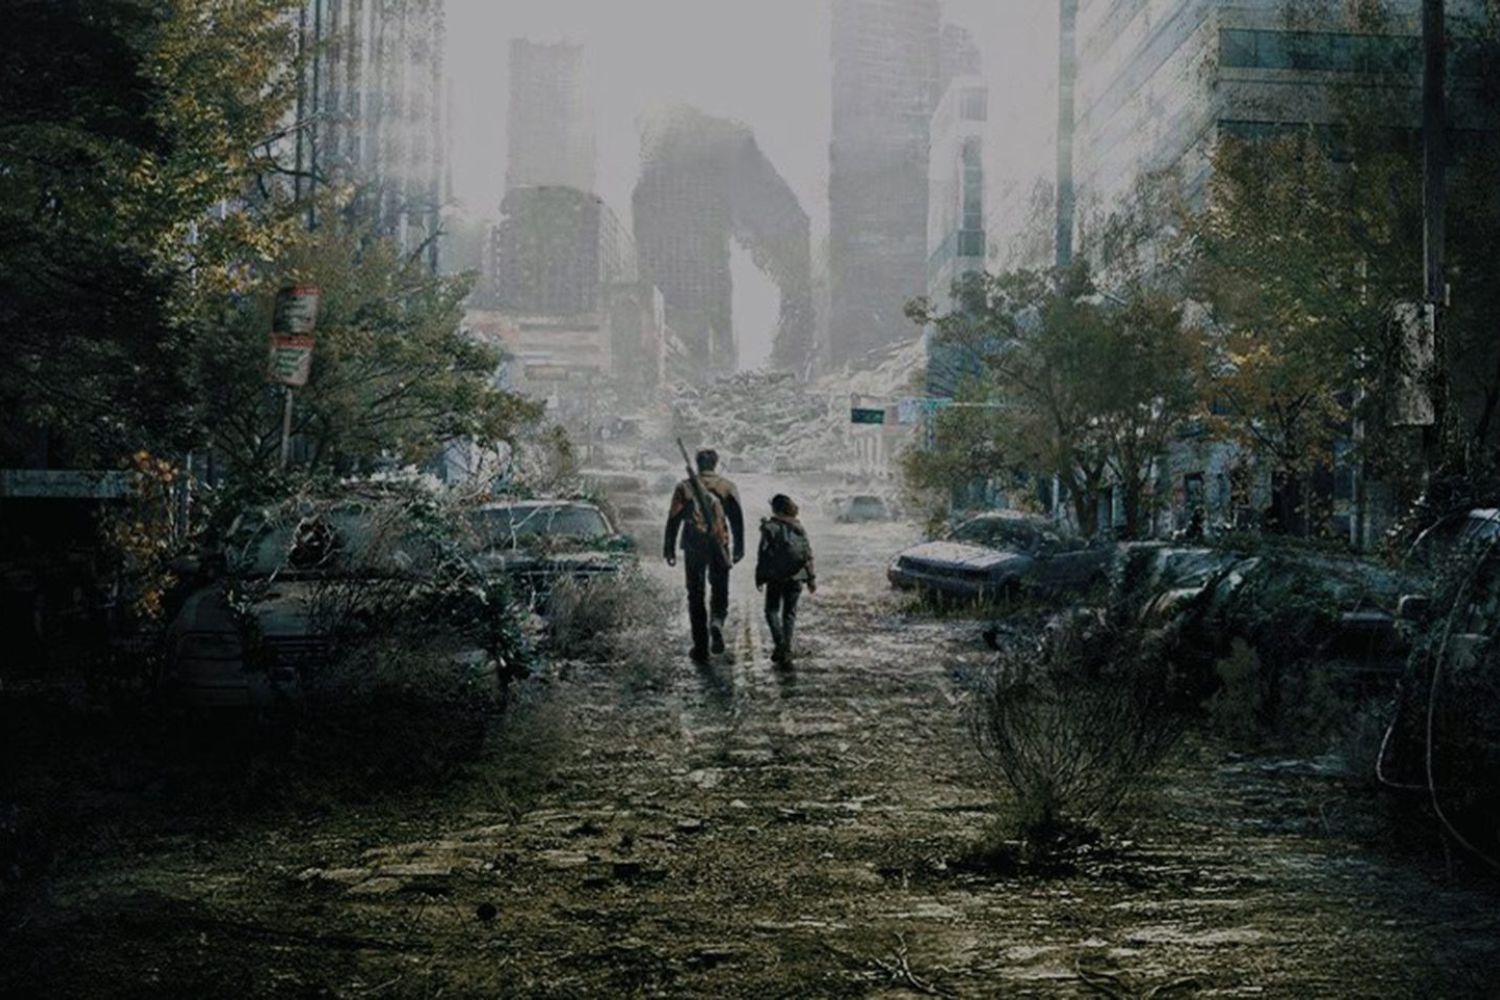 The Last of Us: Crítica da primeira temporada da série